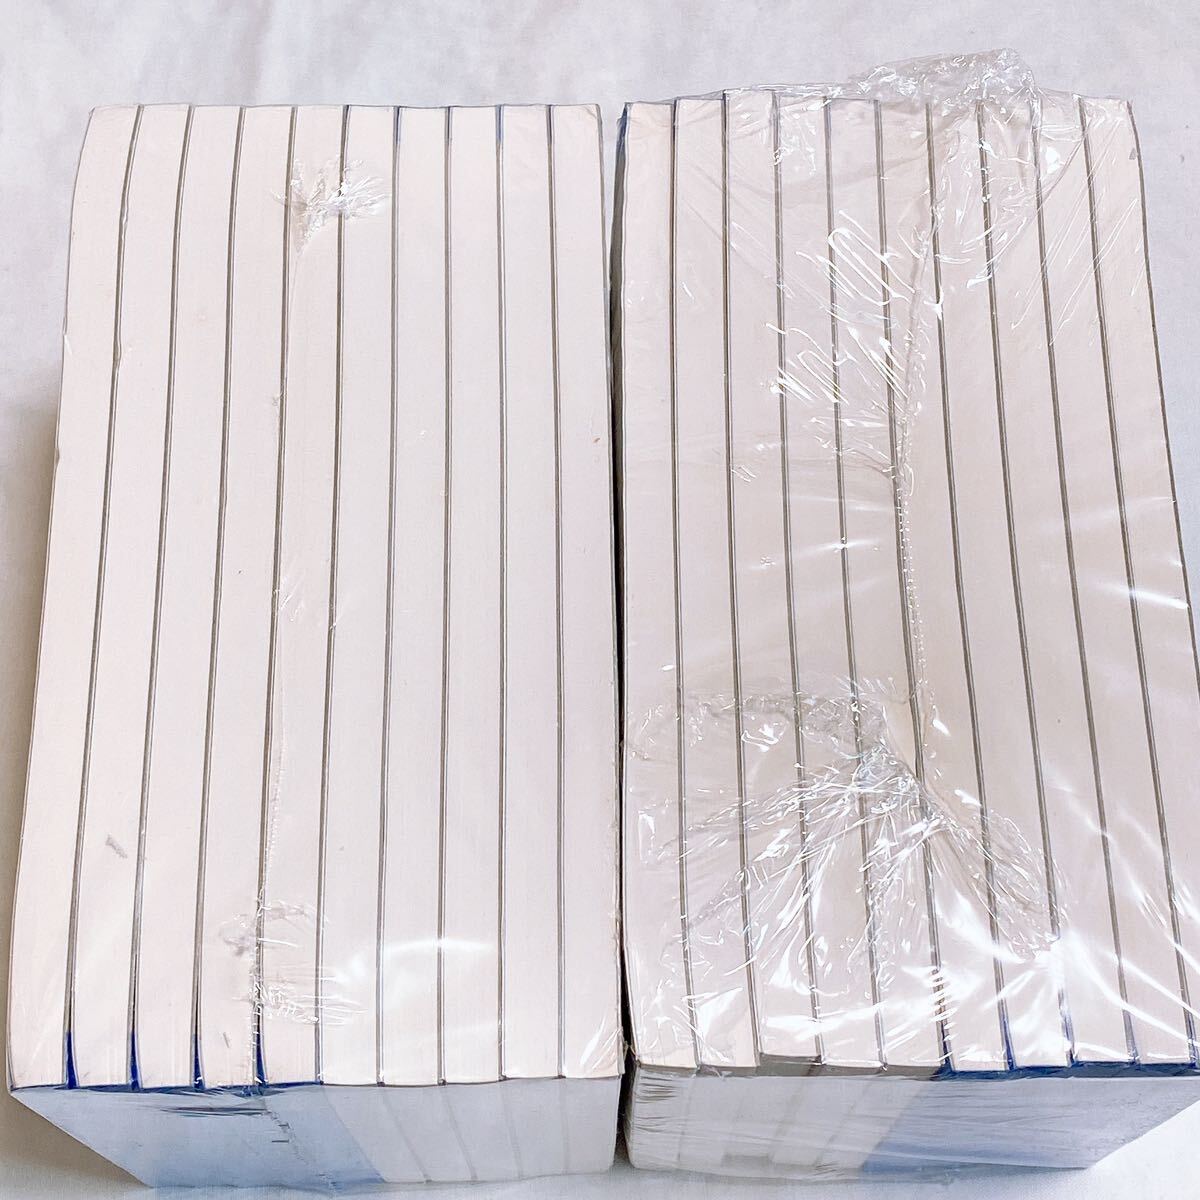 [ не использовался товар ] накладная 3 листов копирование 50 комплект no- карбоновый SDR9966 2 позиций комплект Y-1396